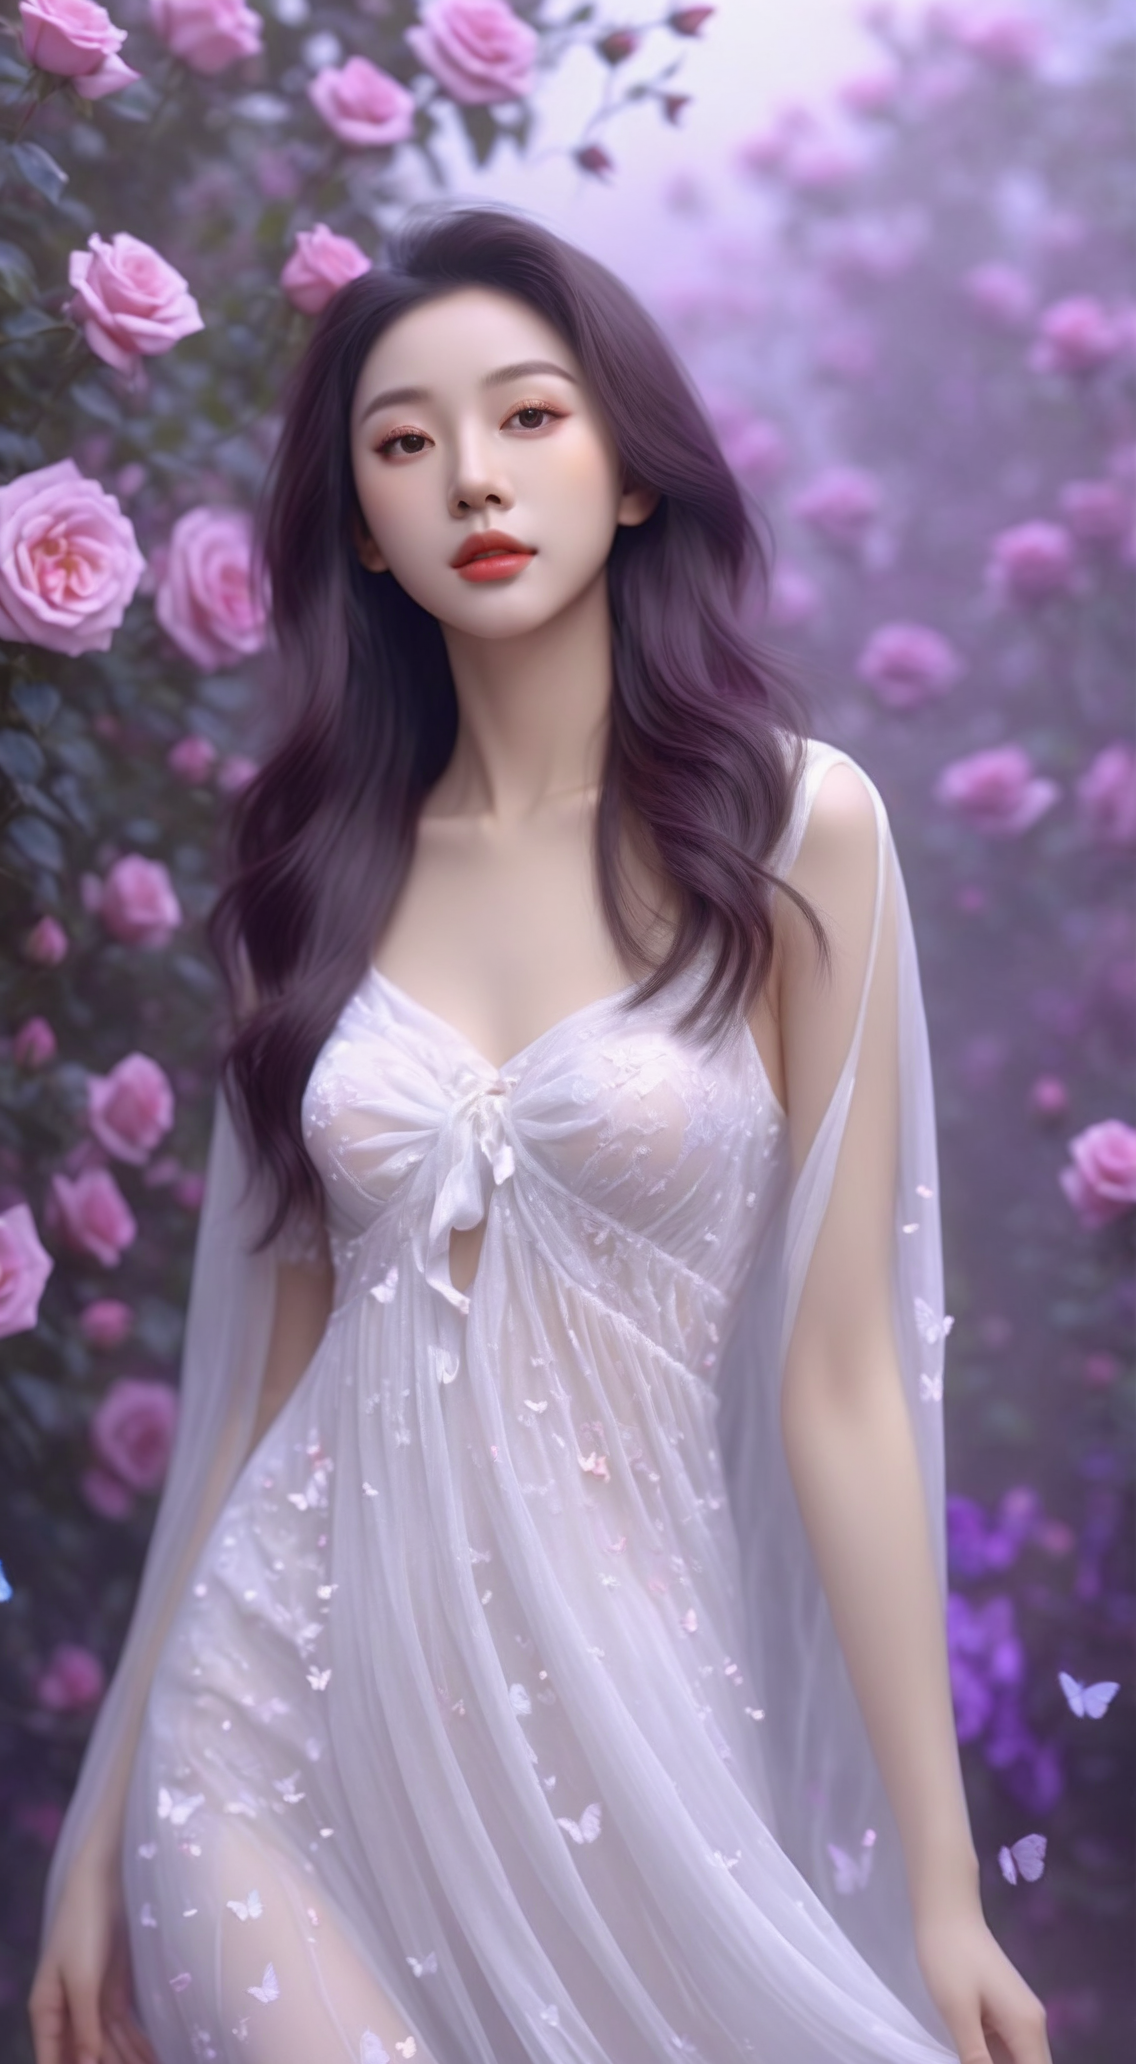 对比与反差·紫花白裙美女